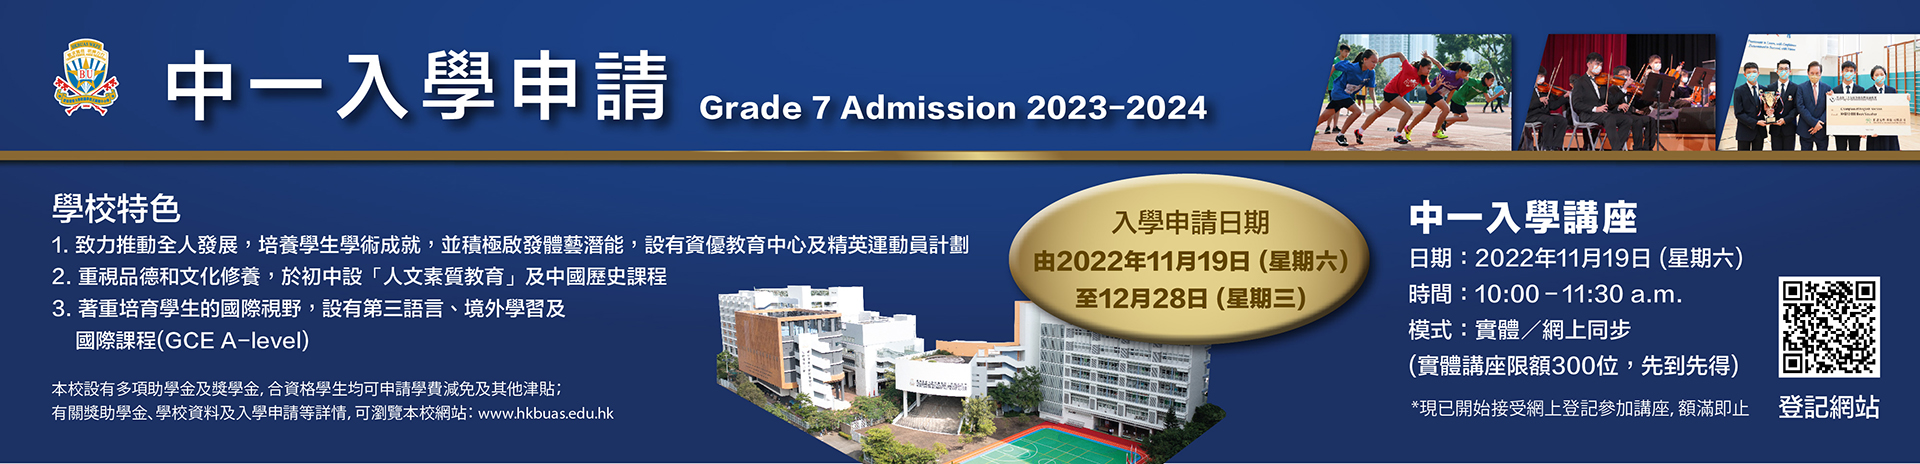 2023-2024 G7 Admission